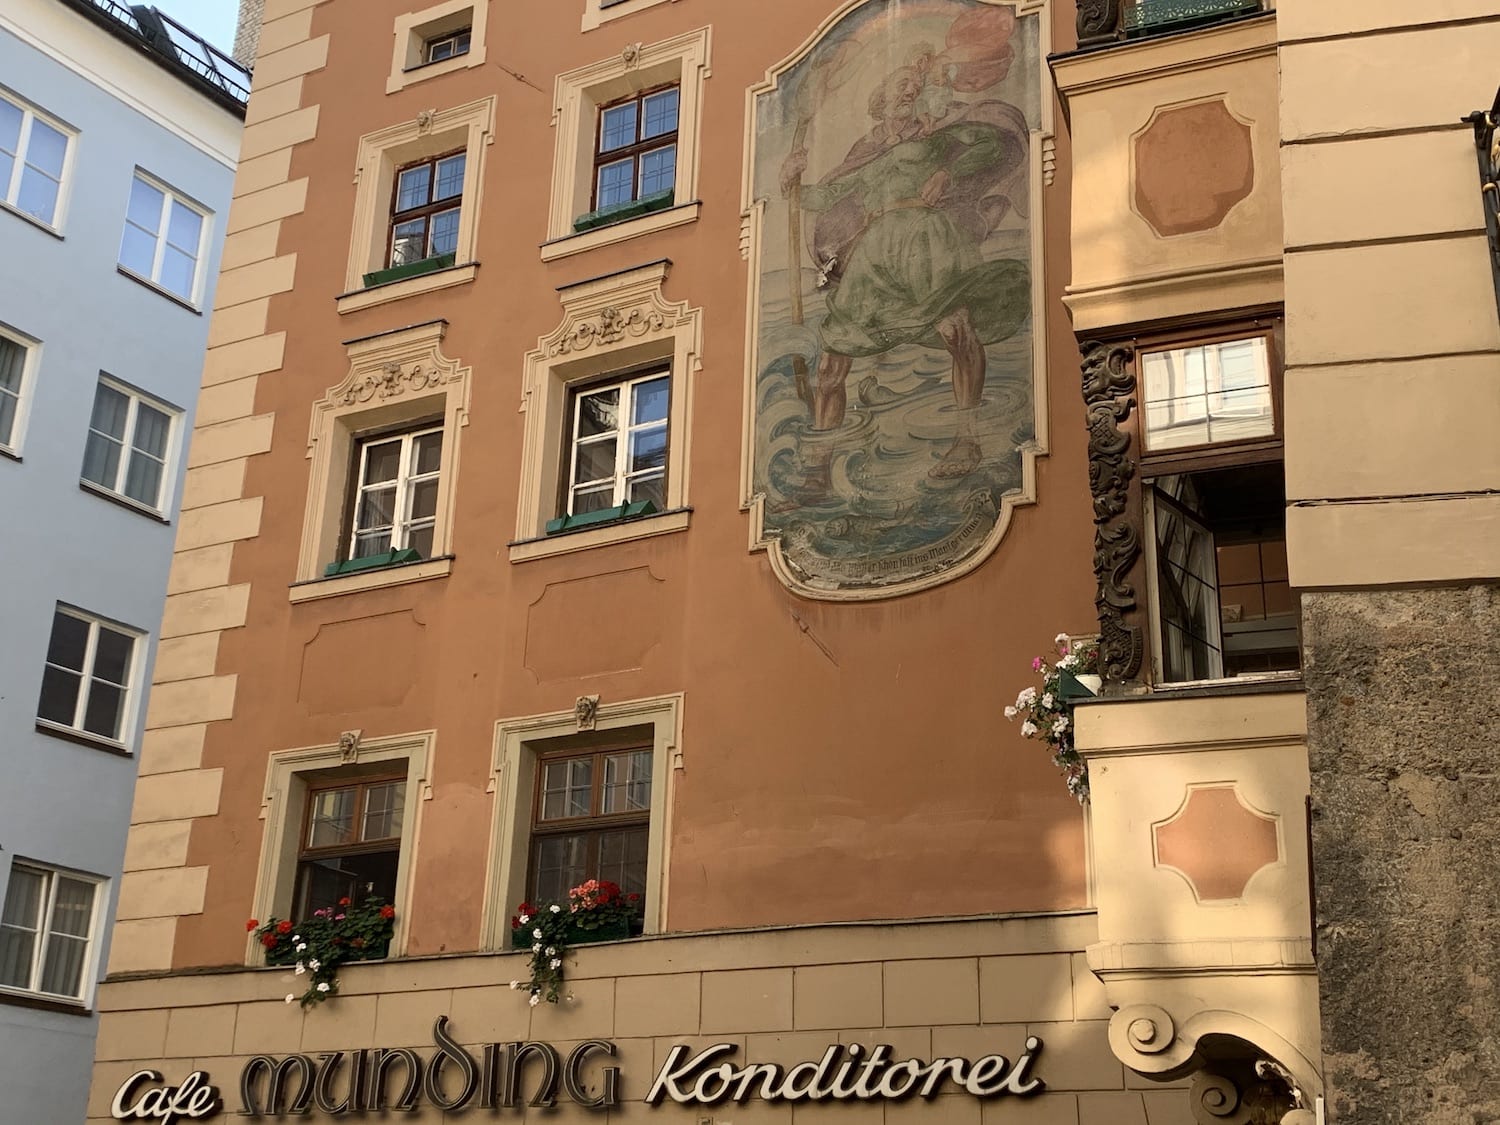 Cafe Munding Innsbruck